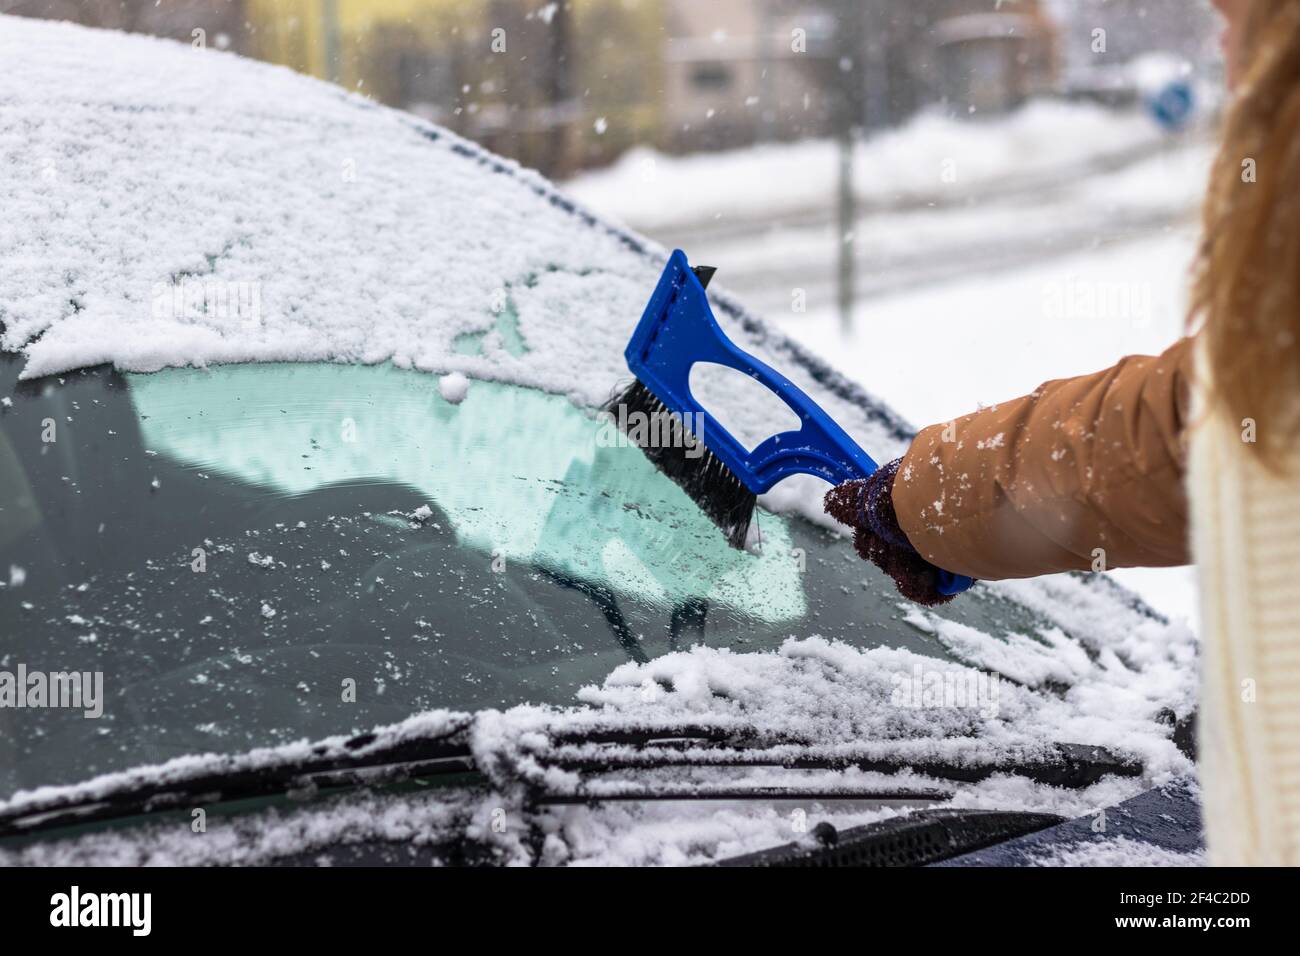 Car Window Ice Scraper by Public Health England